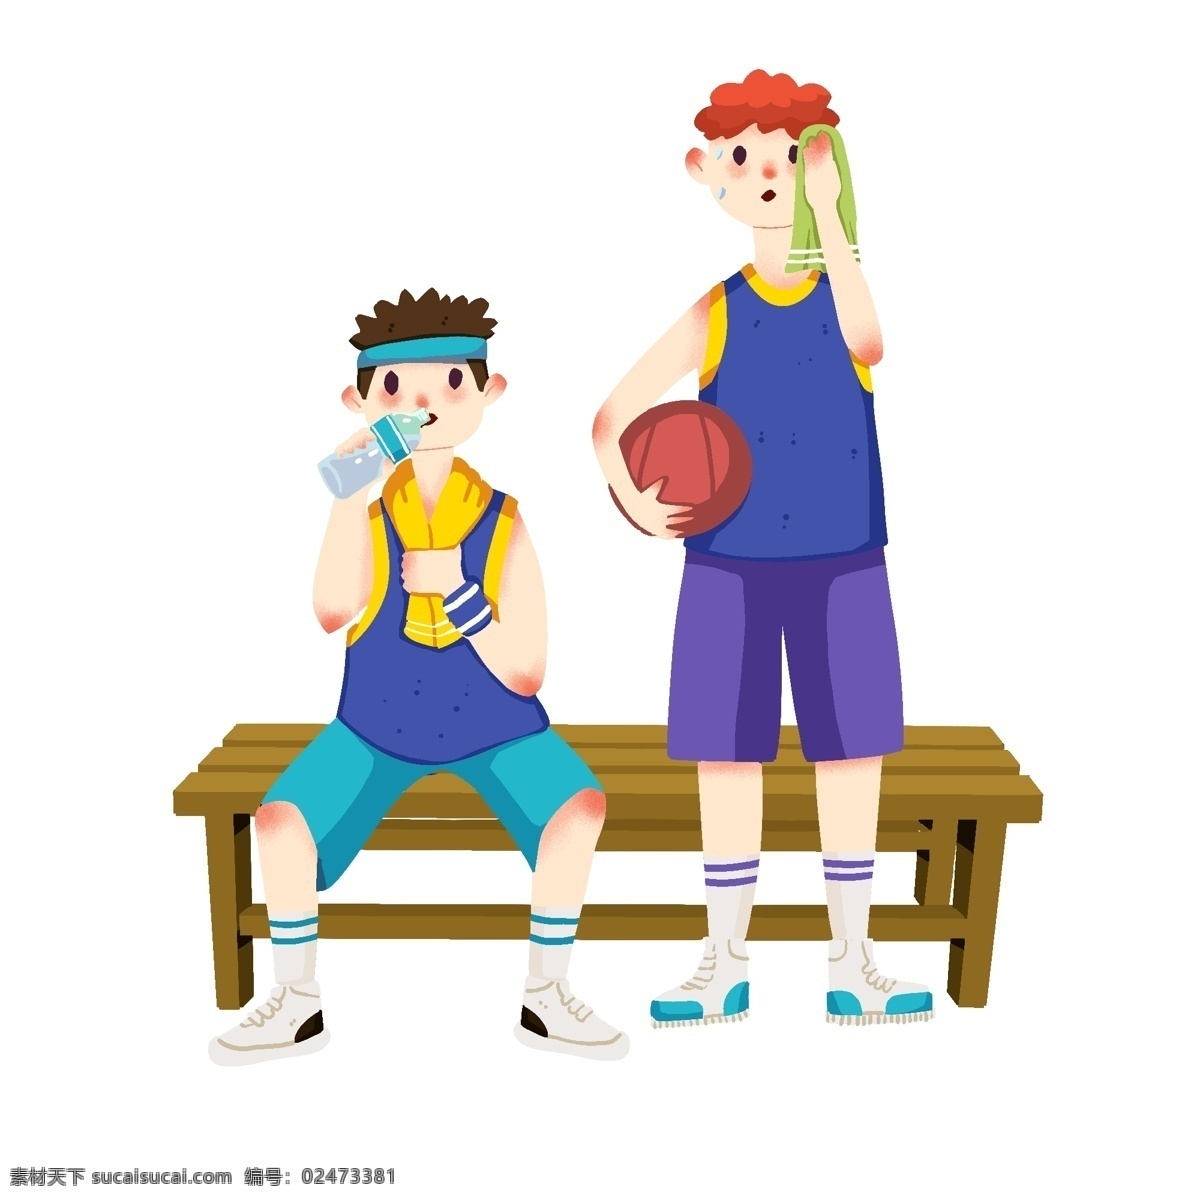 手绘 假期 篮球 插画 打篮球的孩子 卡通插画 快乐的假期 喝水的男孩 红色的篮球 手绘假期插画